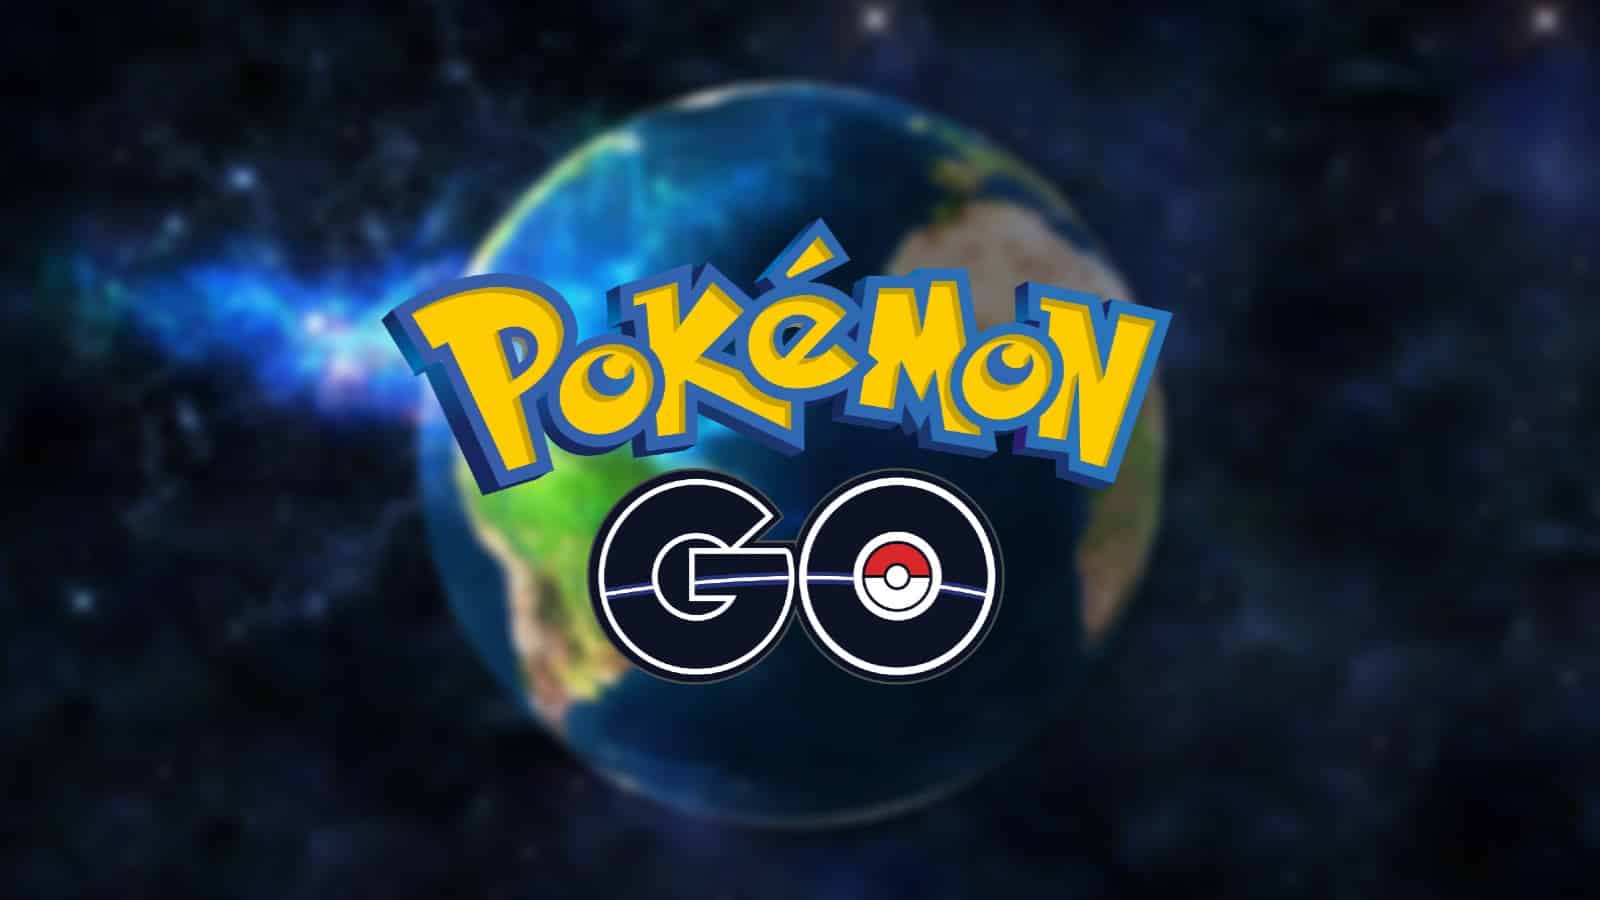 Pokemon Go Global challenge